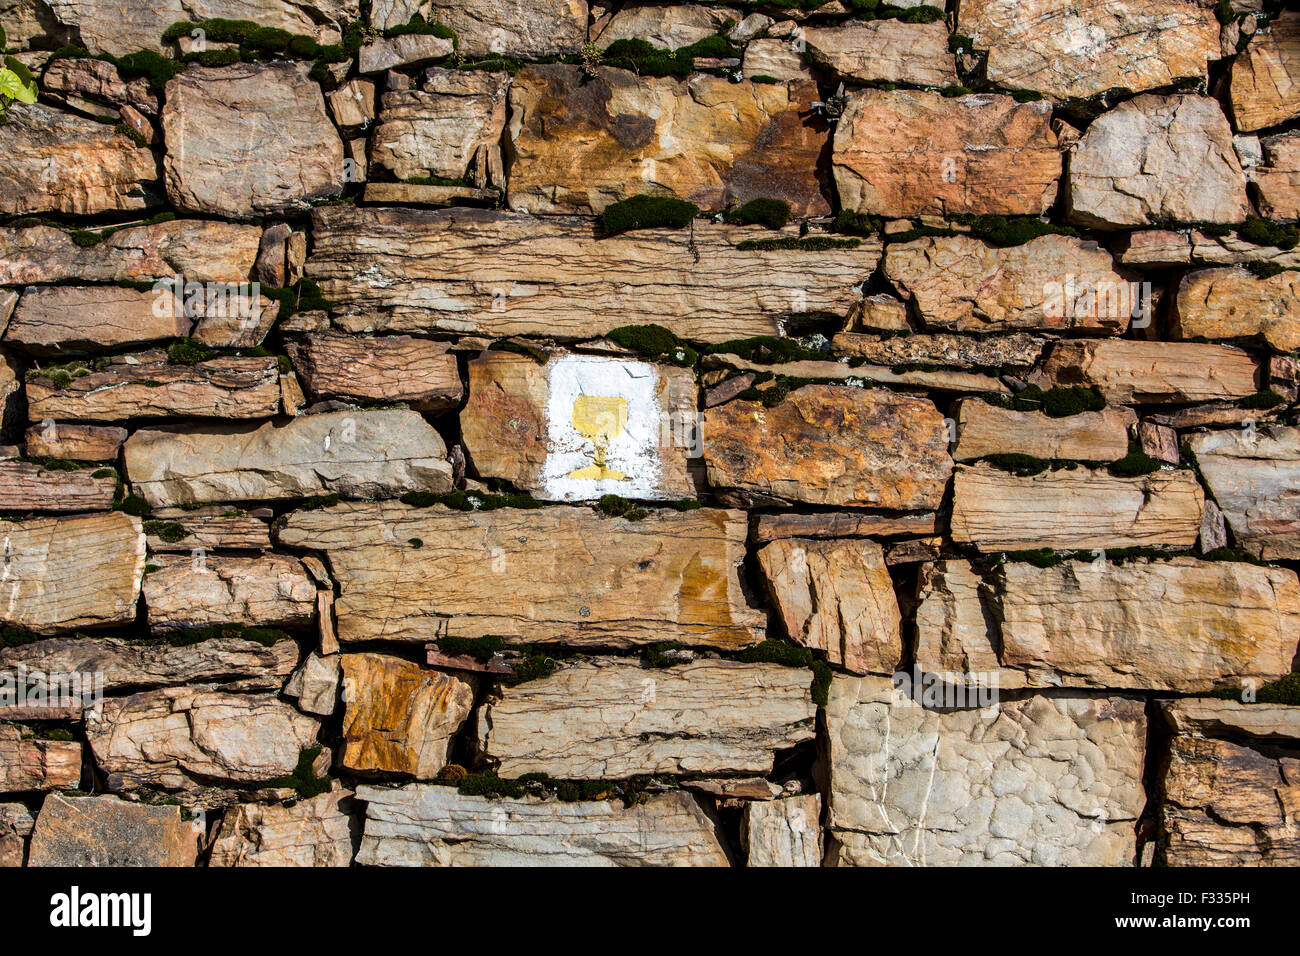 natural stone masonry, in a vineyard, Rudesheim, Rhine valley, Germany Stock Photo